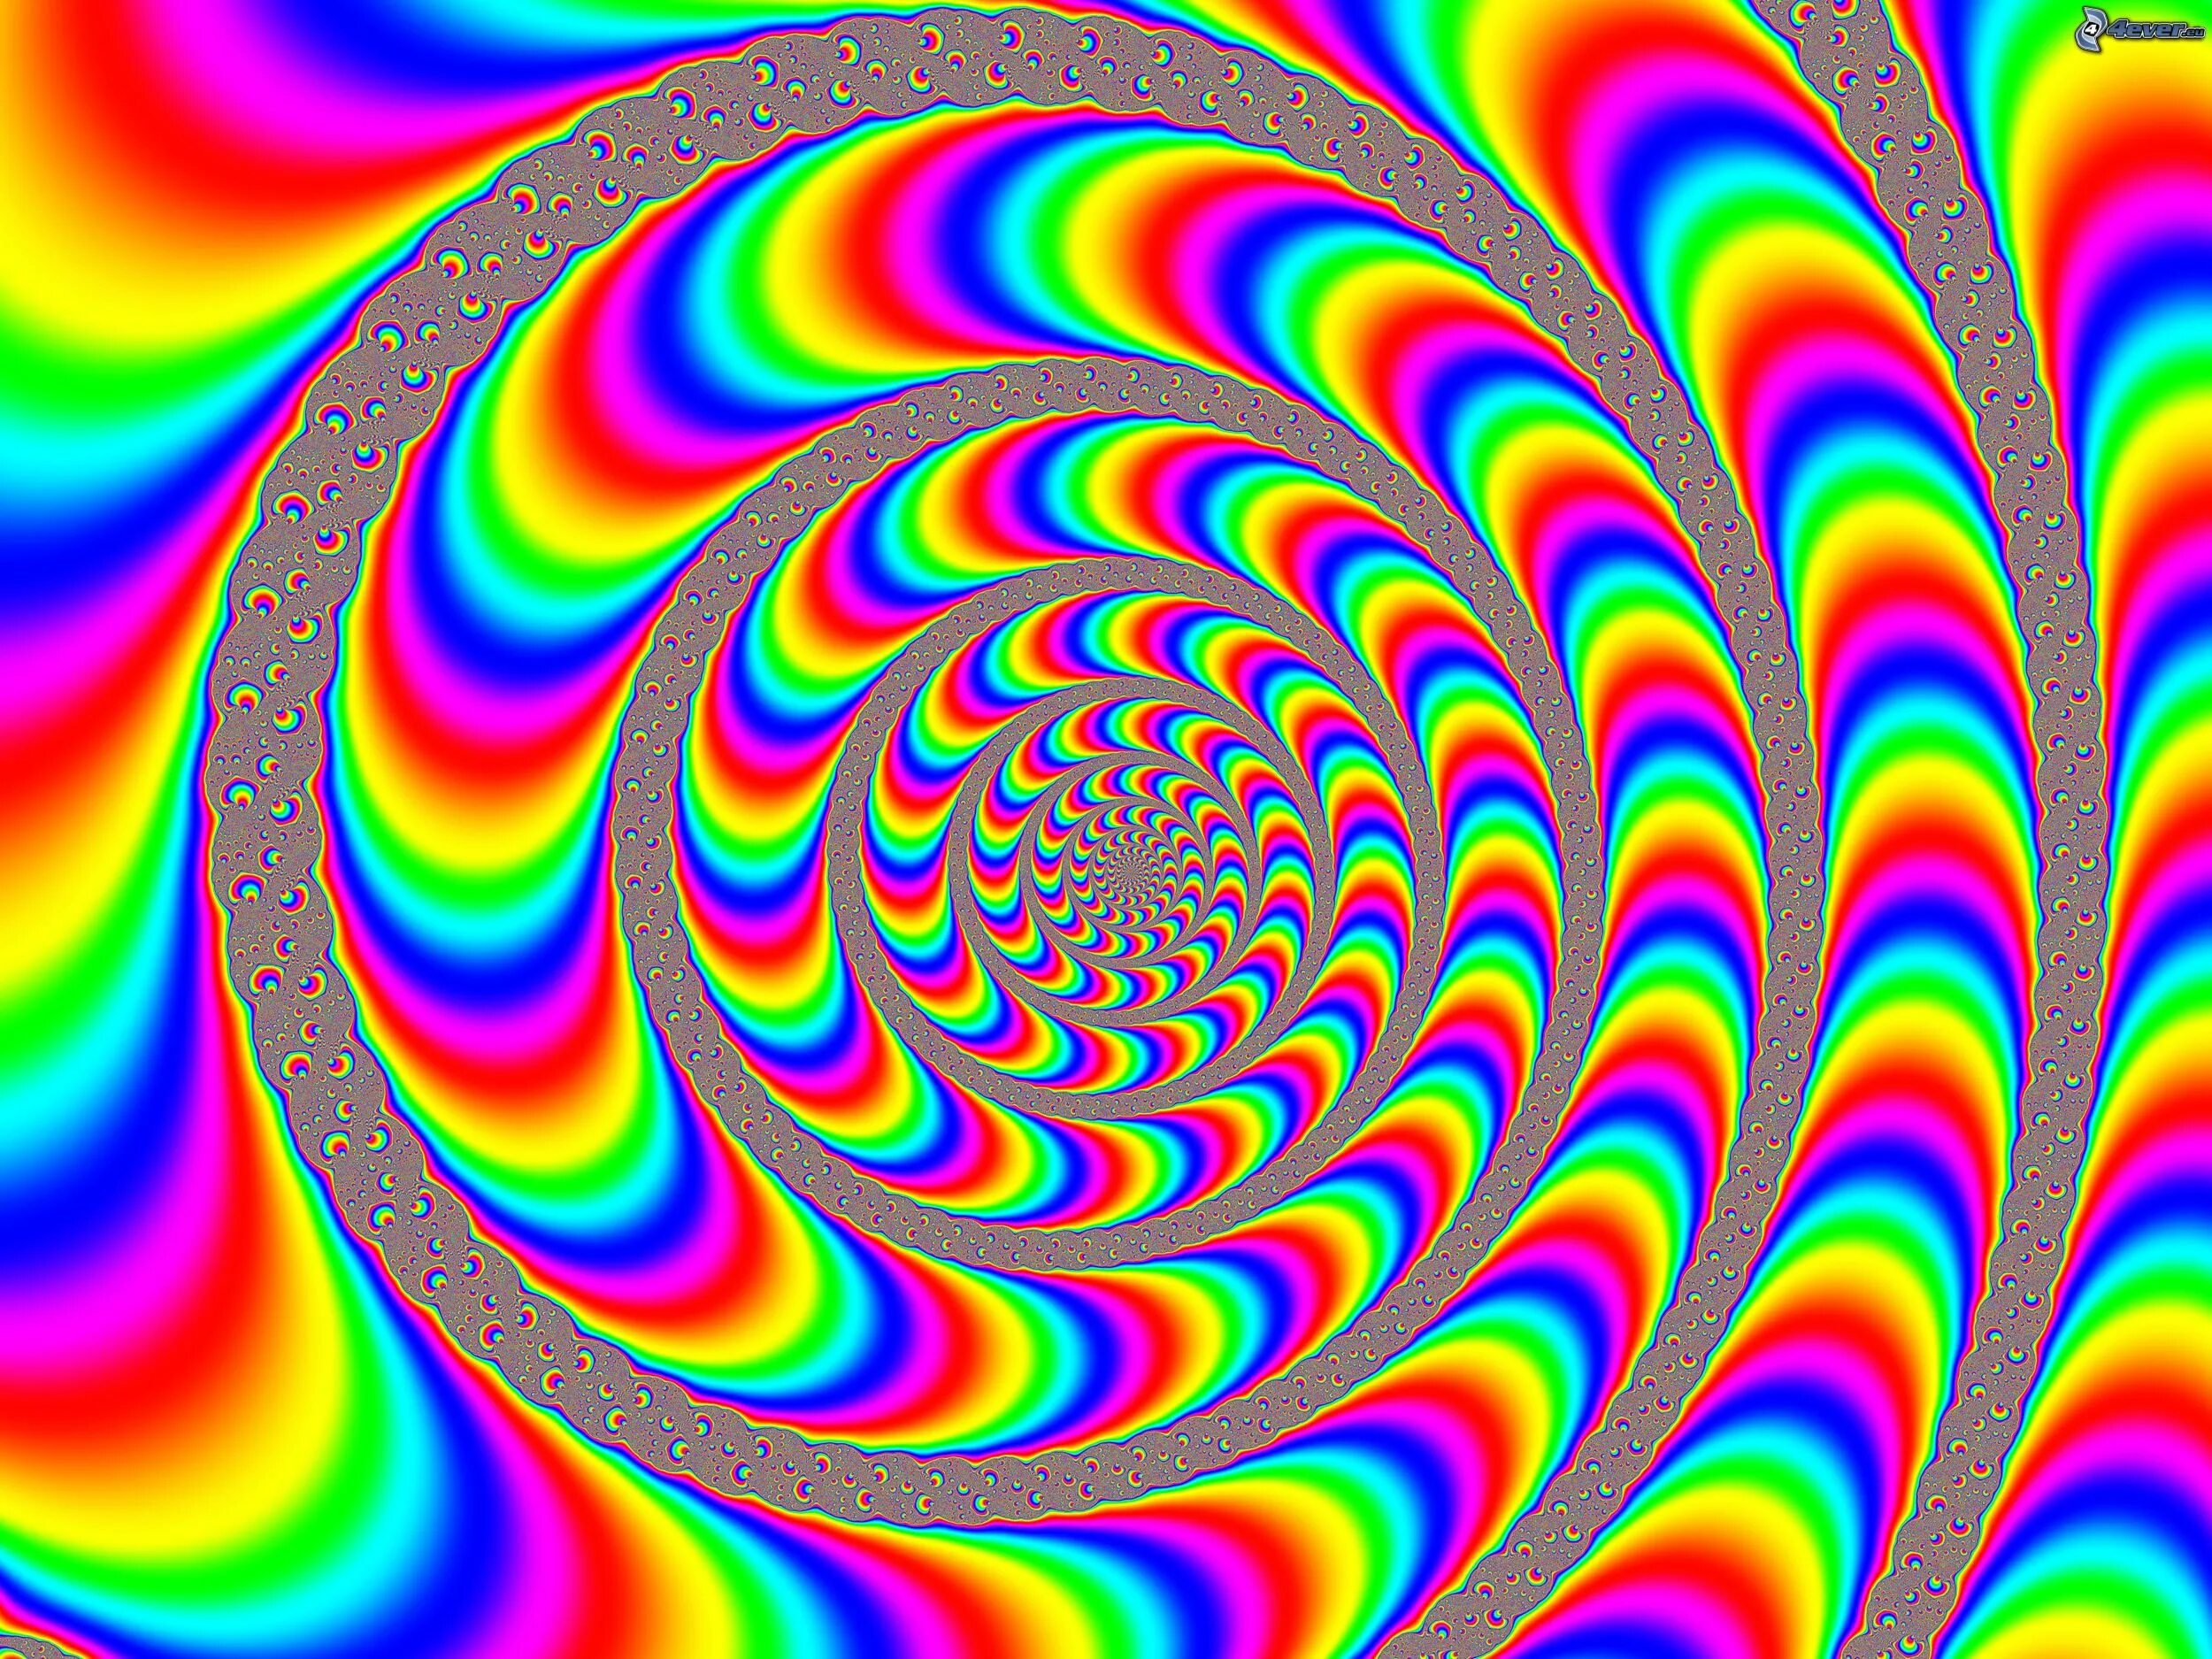 Moving image. Психоделическая спираль. Радужные иллюзии. Оптические иллюзии. Психоделические иллюзии.